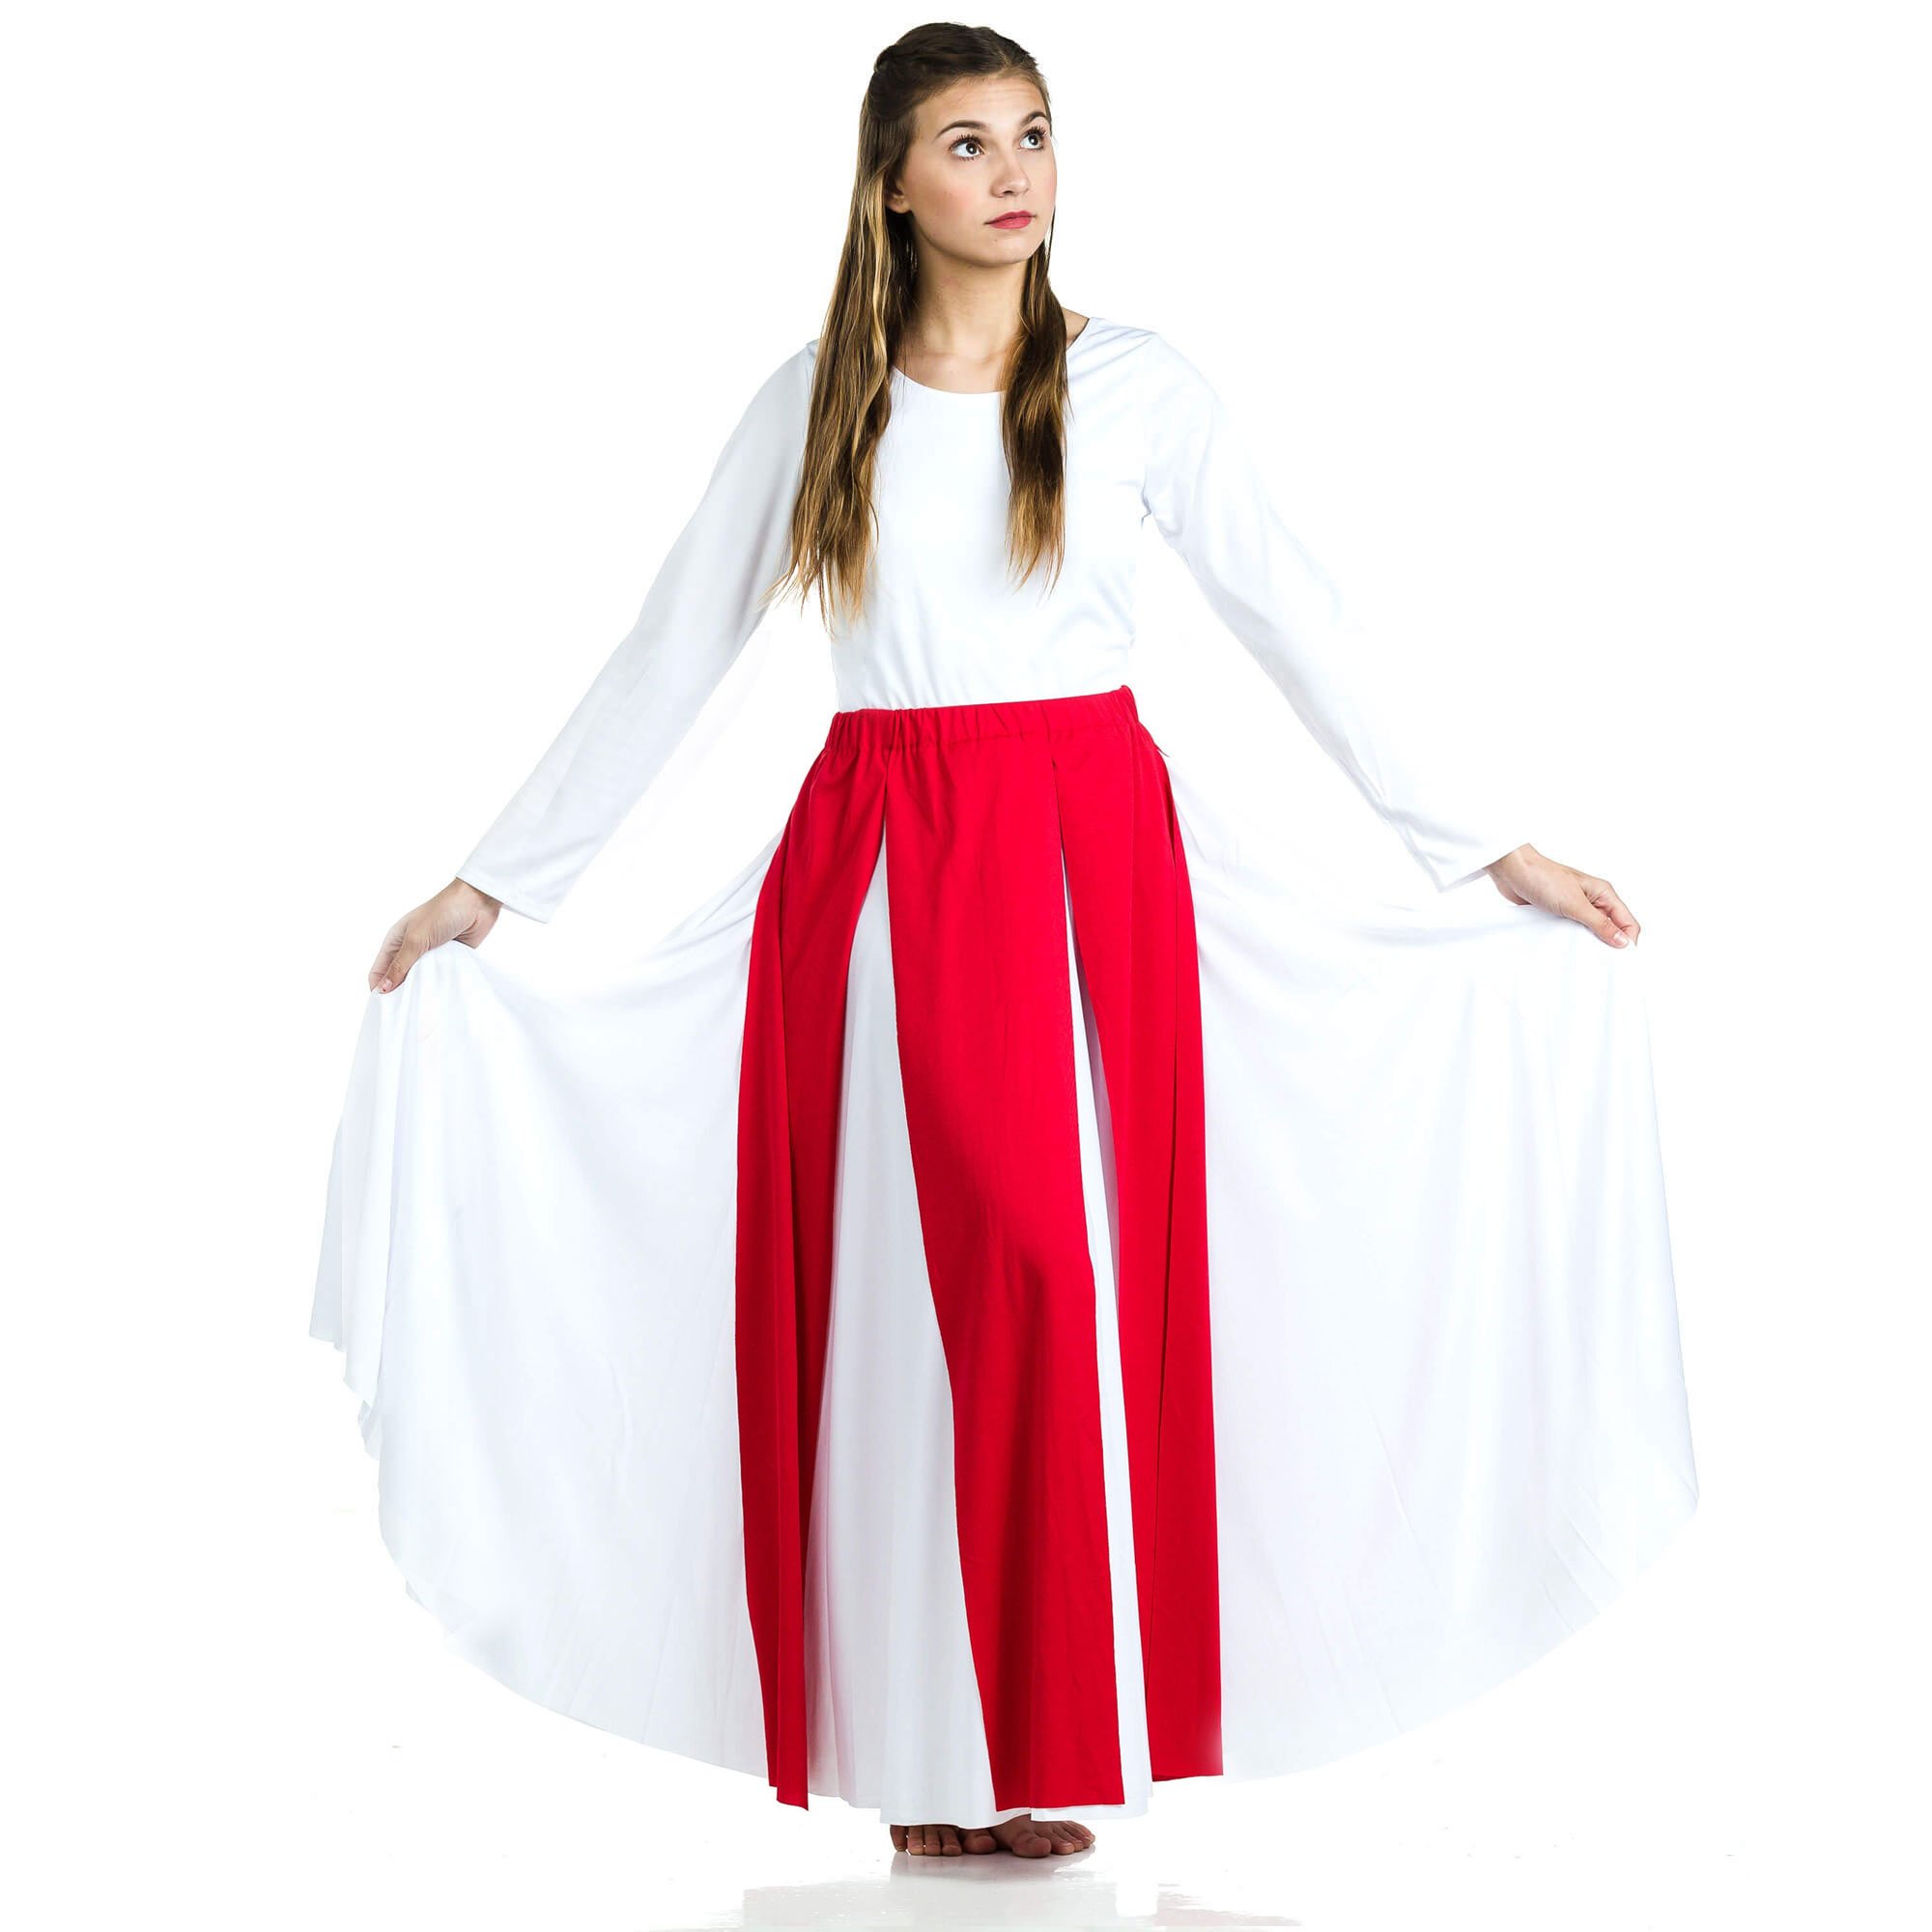 Danzcue Praise Dance Streamer Skirt